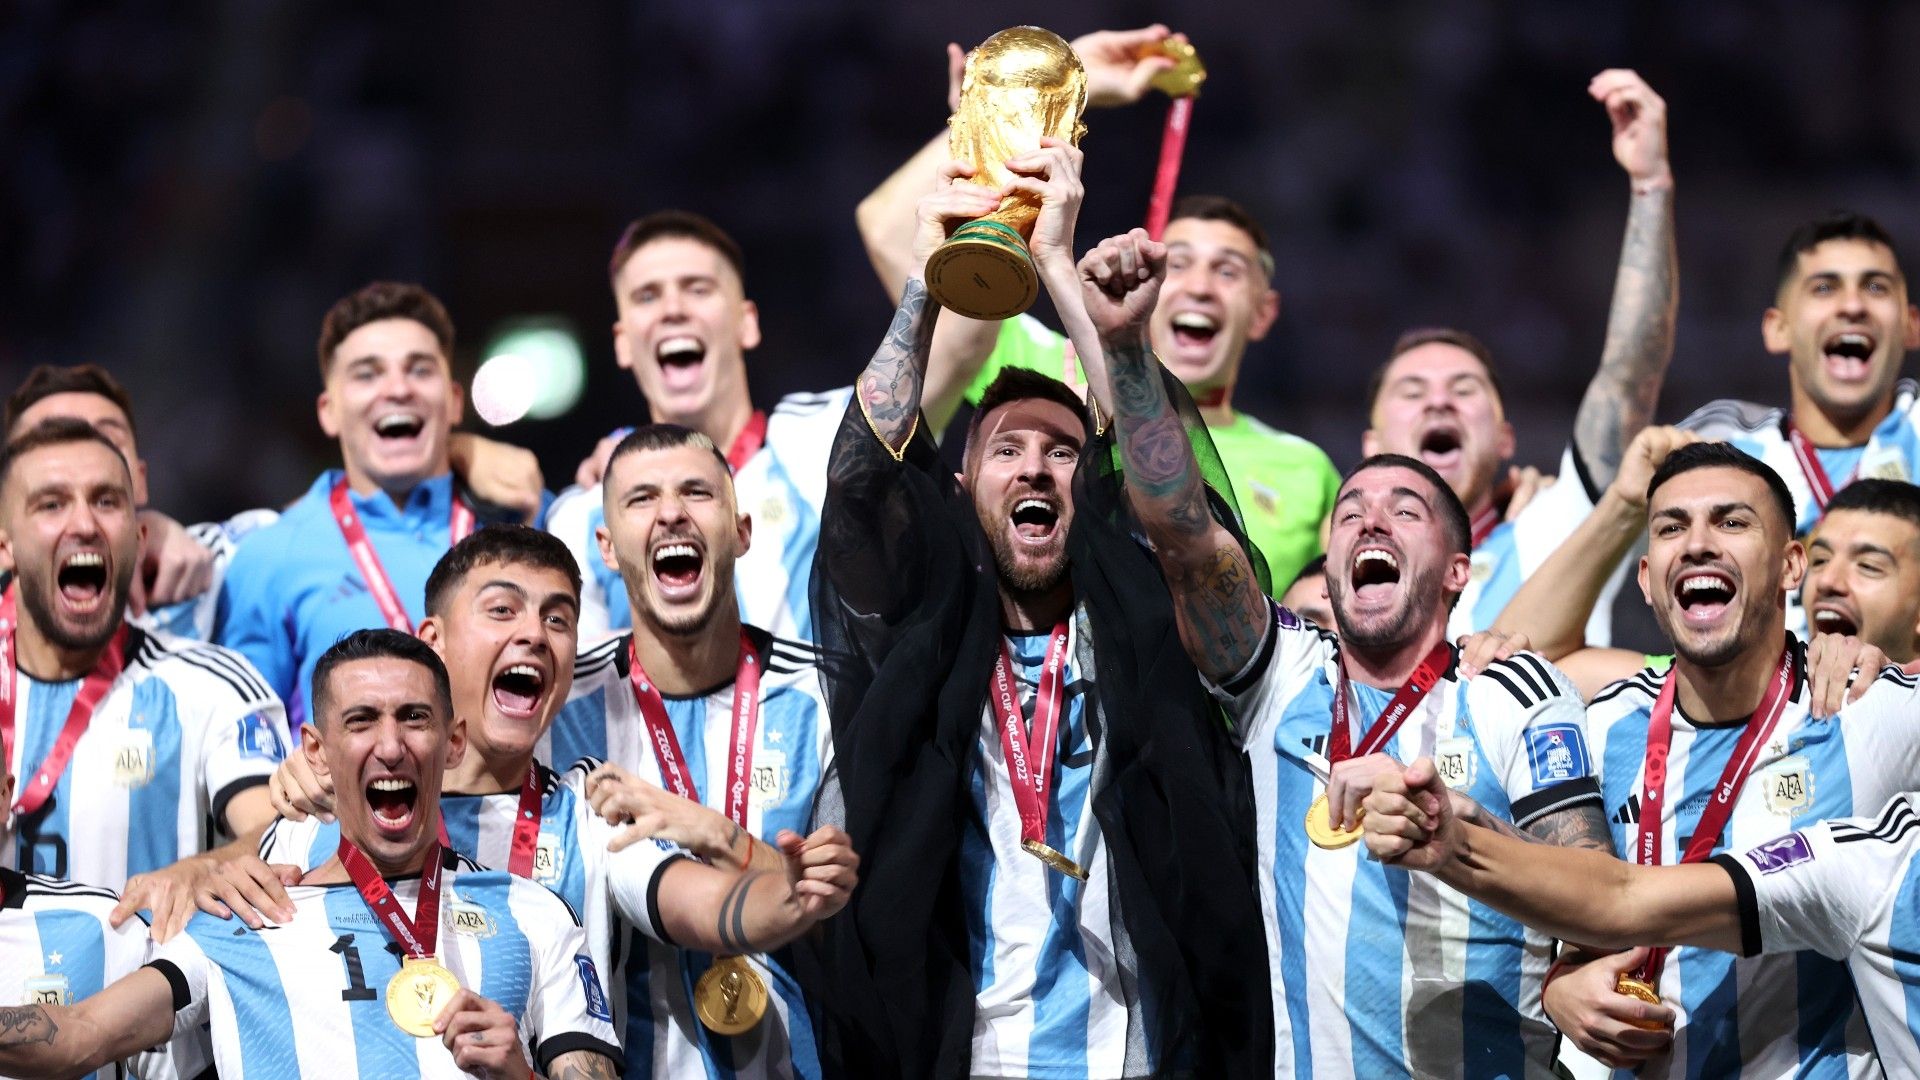 Explicado: Por qué Argentina no reemplazó a Brasil en la cima del ranking FIFA después de ganar la Copa del Mundo